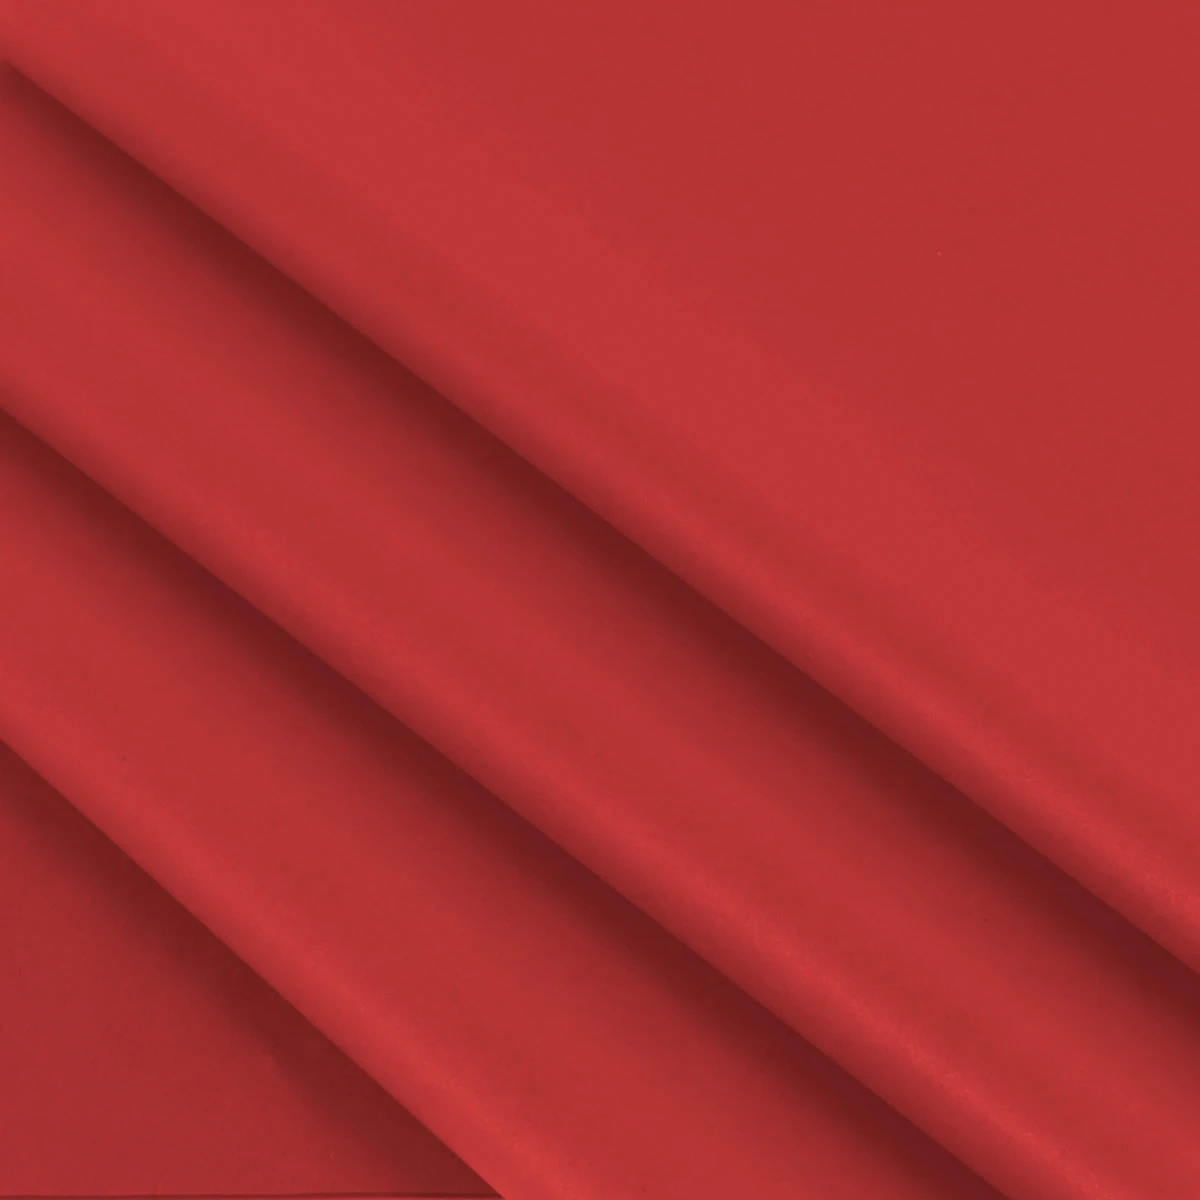 Vloeipapier rood 25 x 35 cm (480 vellen)